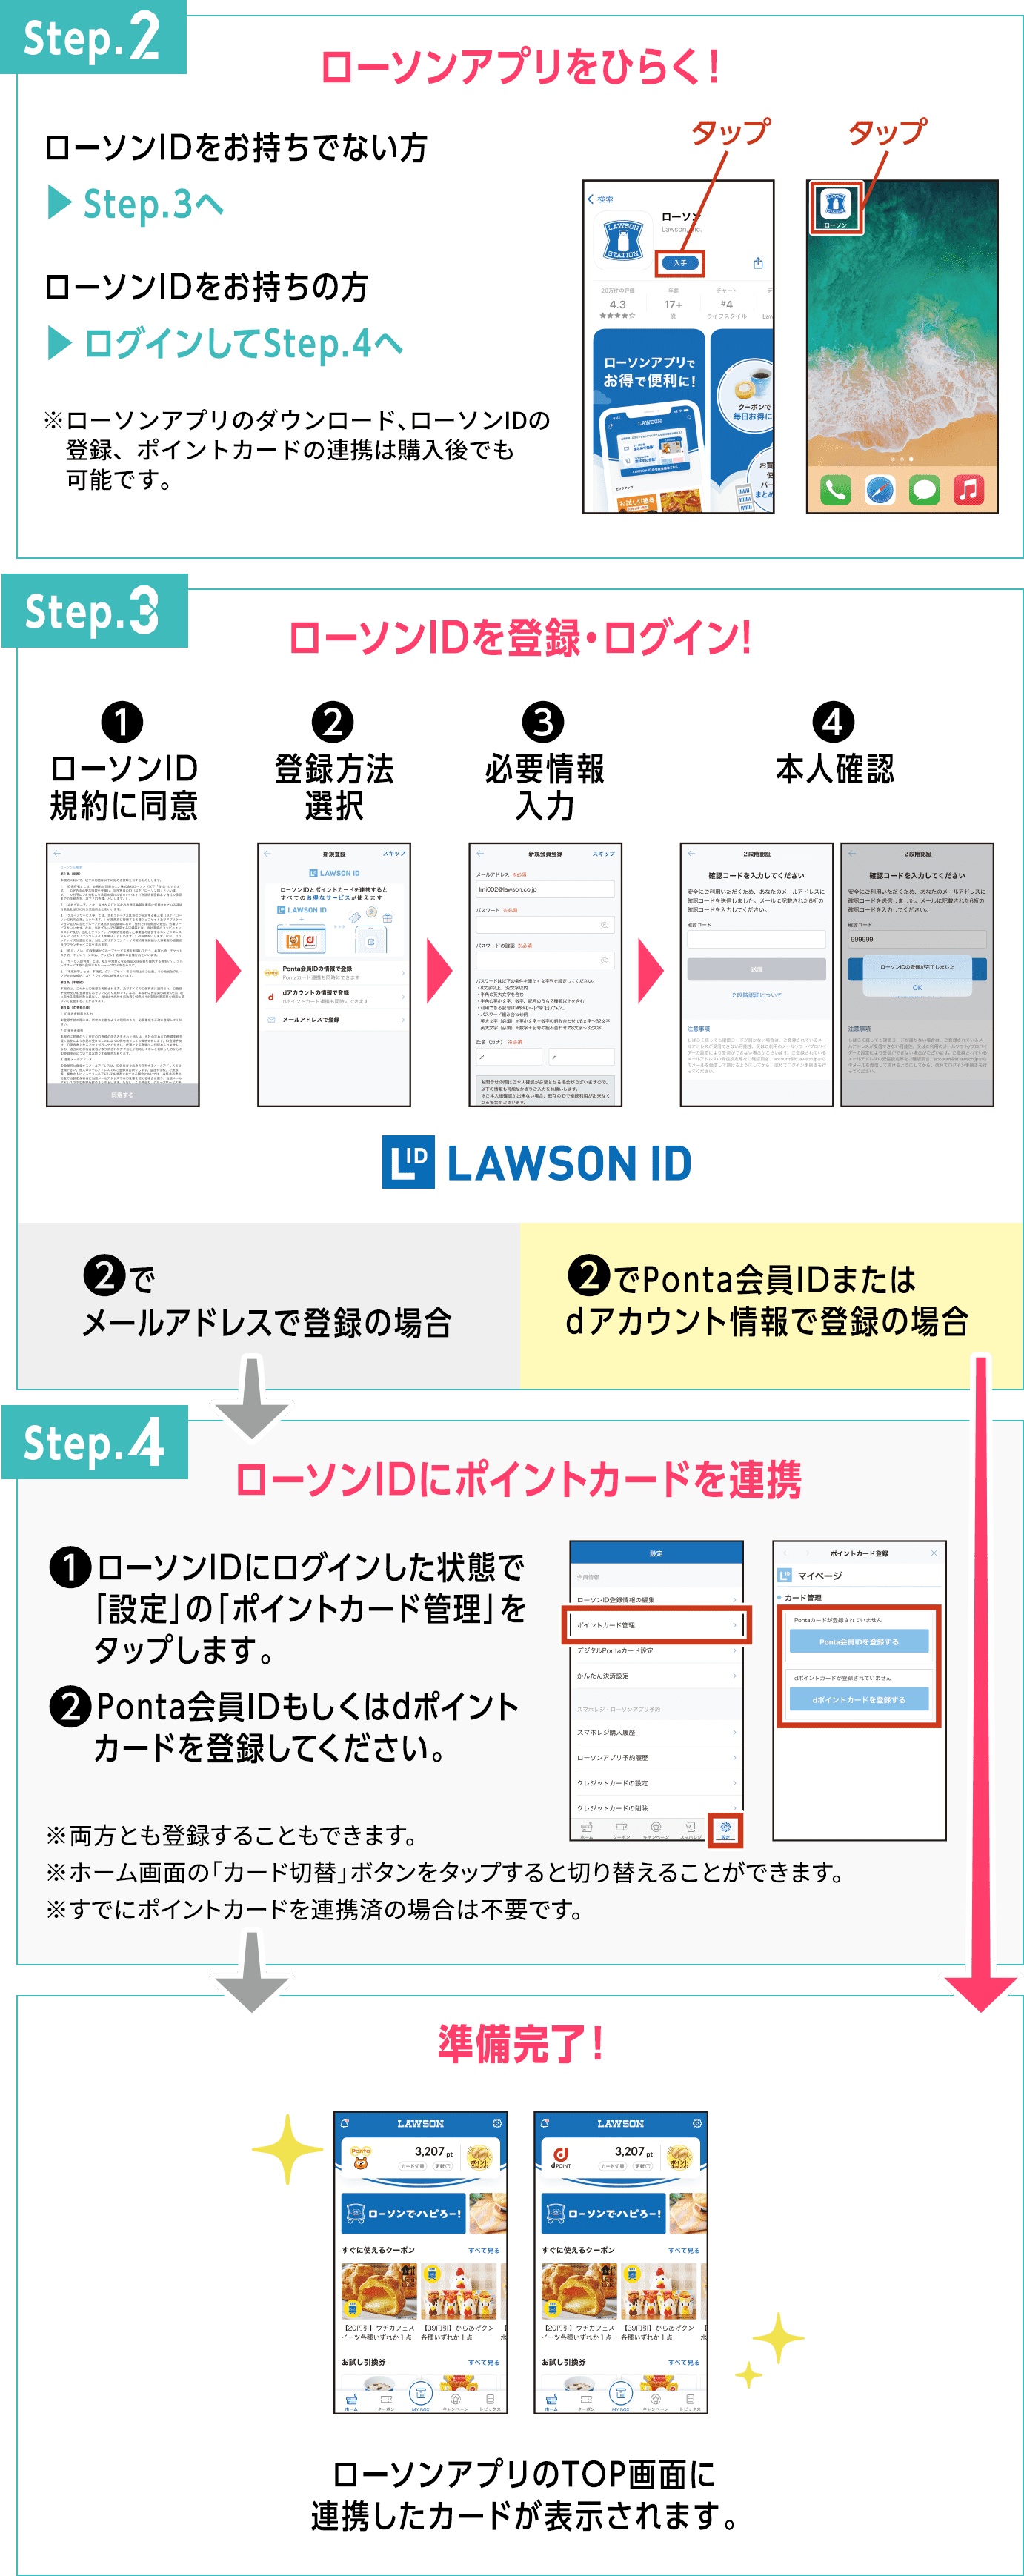 【Step.2 ローソンアプリをひらく！】ローソンIDをお持ちでない方▶Step.3へ ローソンIDをお持ちの方▶ログインしてStep.4へ ※ローソンアプリのダウンロード､ローソンIDの登録、ポイントカードの連携は購入後でも可能です。／
                      【Step.3 ローソンIDを登録・ログイン!】ローソンID規約に同意▶登録方法選択▶必要情報入力▶本人確認／
                      【Step.4 ローソンIDにポイントカードを連携】❶ローソンIDにログインした状態で「設定」の「ポイントカード管理」をタップします。❷Ponta会員IDもしくはdポイントカードを登録してください。 ※両方とも登録することもできます。※ホーム画面の「カード切替」ボタンをタップすると切り替えることができます。※すでにポイントカードを連携済の場合は不要です。／
                      【準備完了！】ローソンアプリのTOP画面に連携したカードが表示されます。